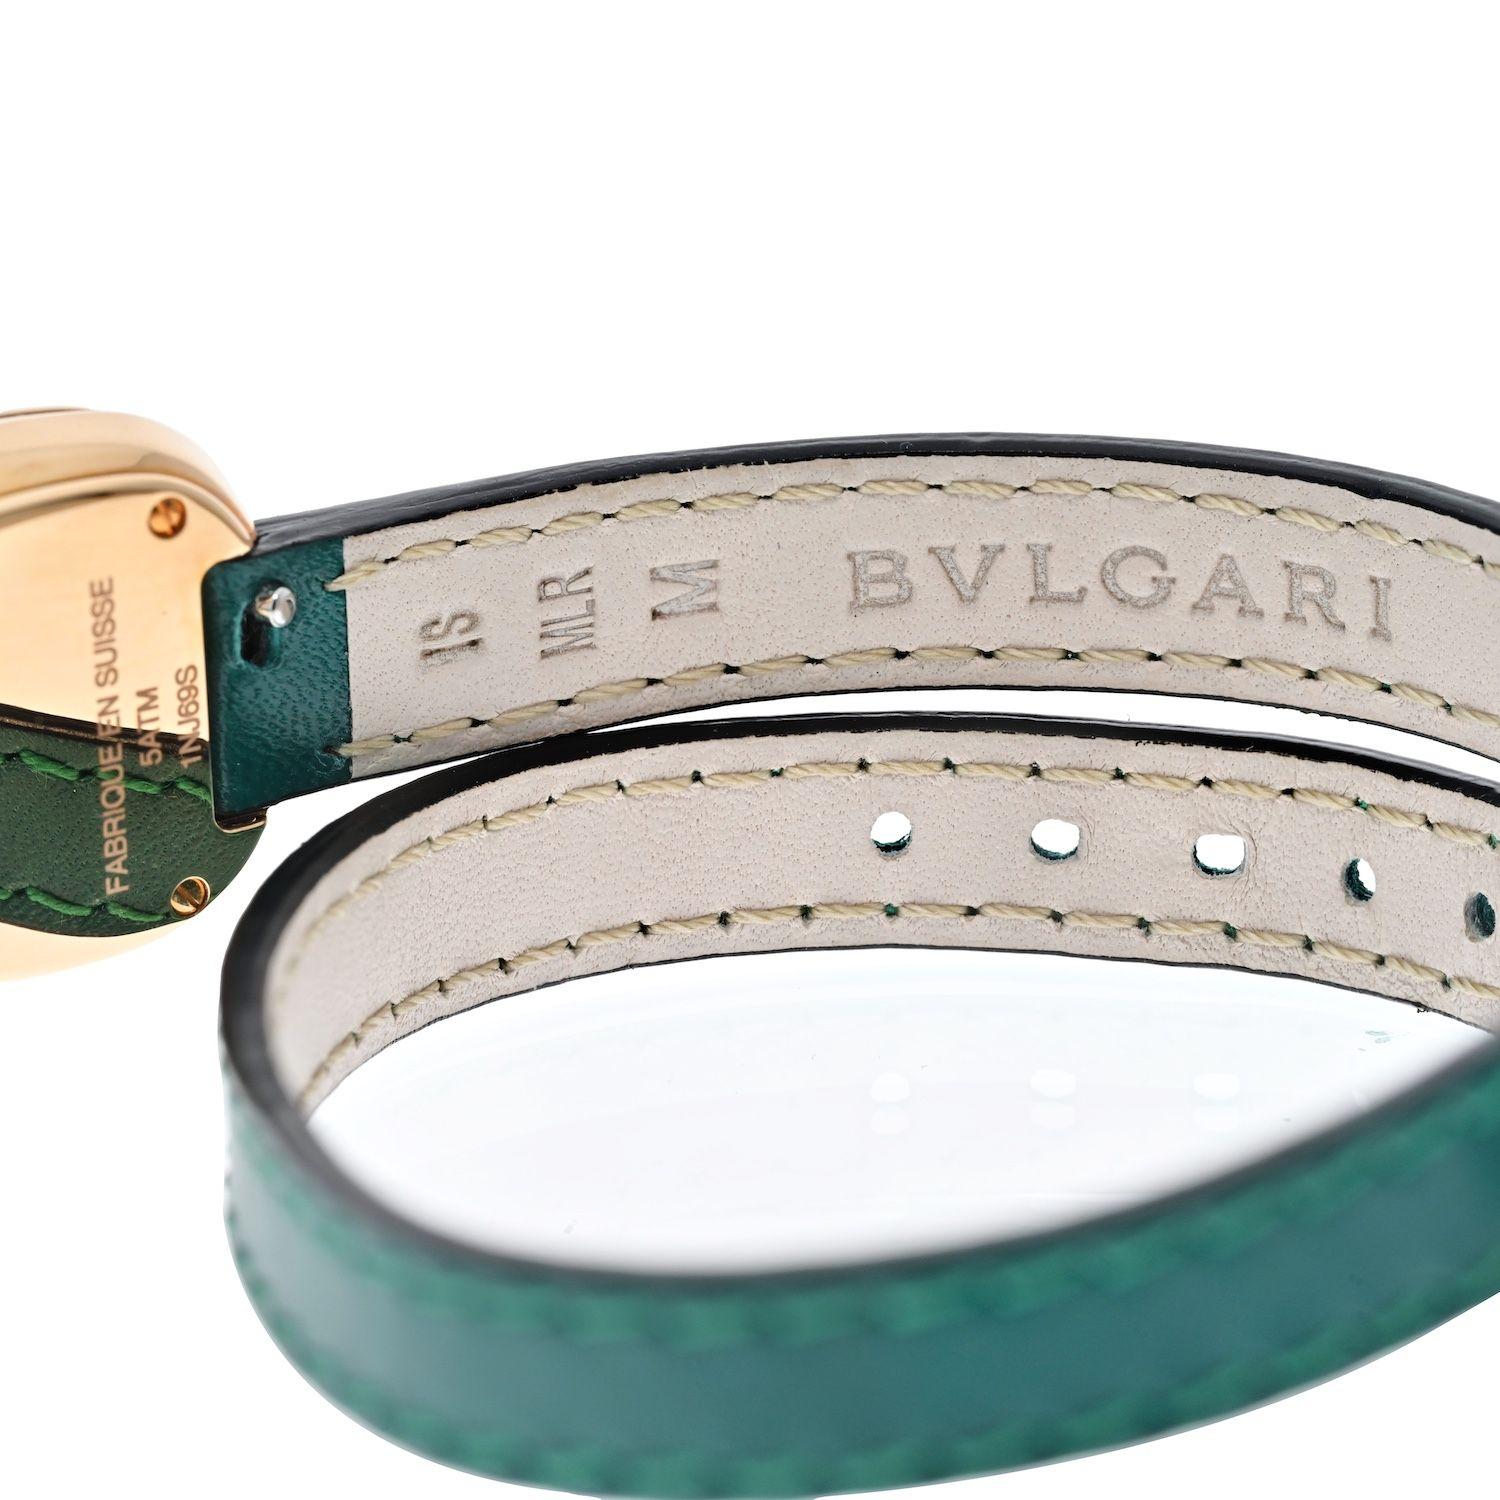 Magnifique montre à offrir à votre proche ou à acheter pour vous-même : Montre Bvlgari Serpenti avec bracelet en cuir. Elle est réalisée dans les règles de l'art du designer italien, avec un boîtier en or rose en forme de serpent, avec des diamants